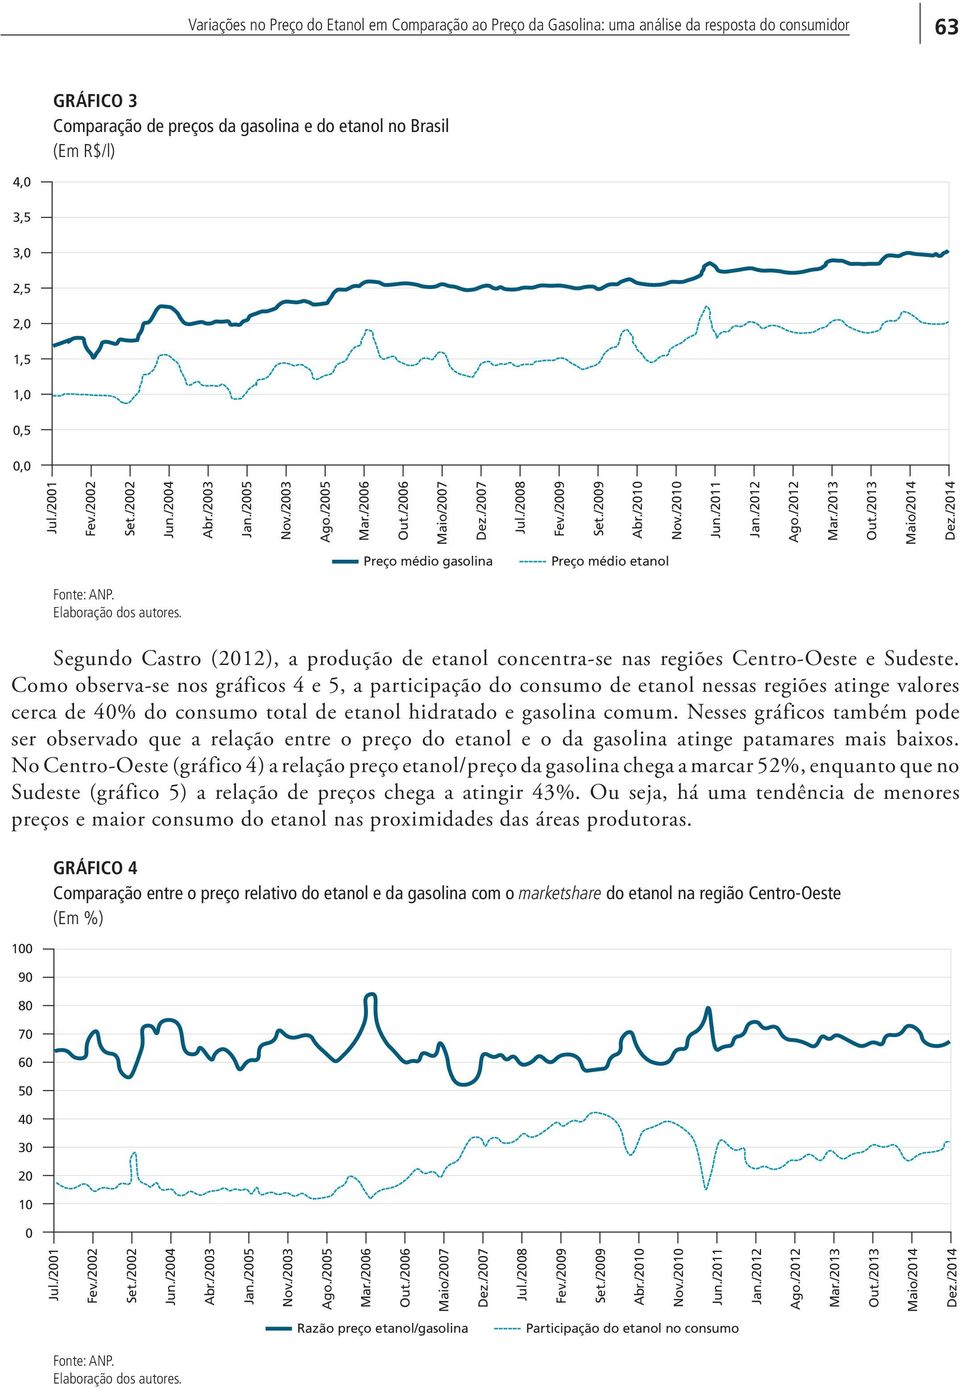 /2011 Jan./2012 Ago./2012 Mar./2013 Out./2013 Maio/2014 Dez./2014 Preço médio gasolina Preço médio etanol Fonte: ANP. Elaboração dos autores.